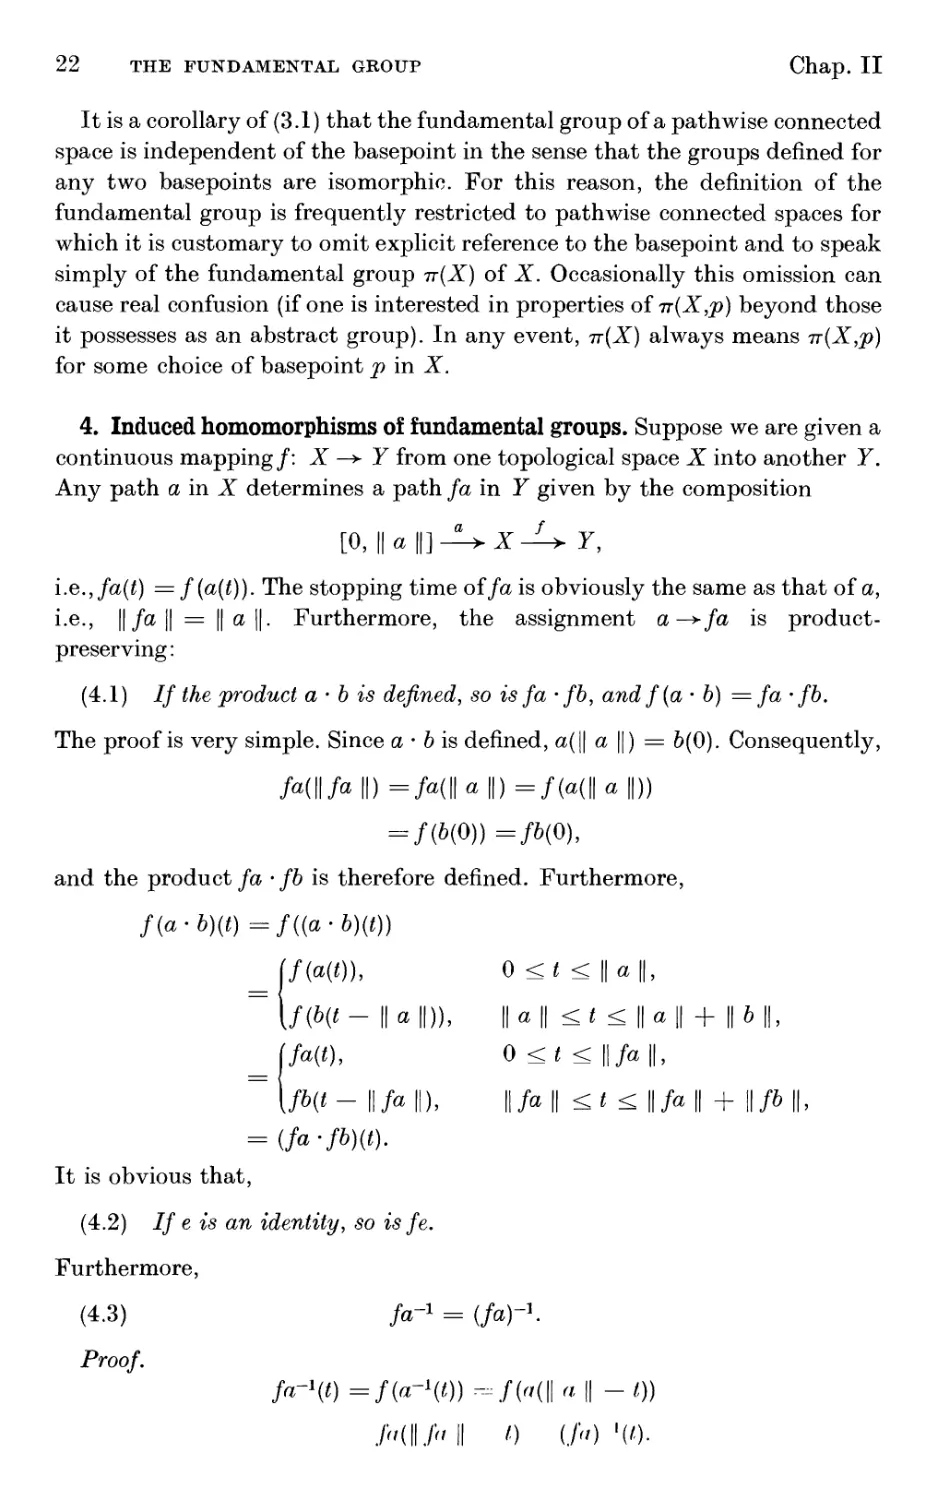 4. Induced homomorphisms of fundamental groups